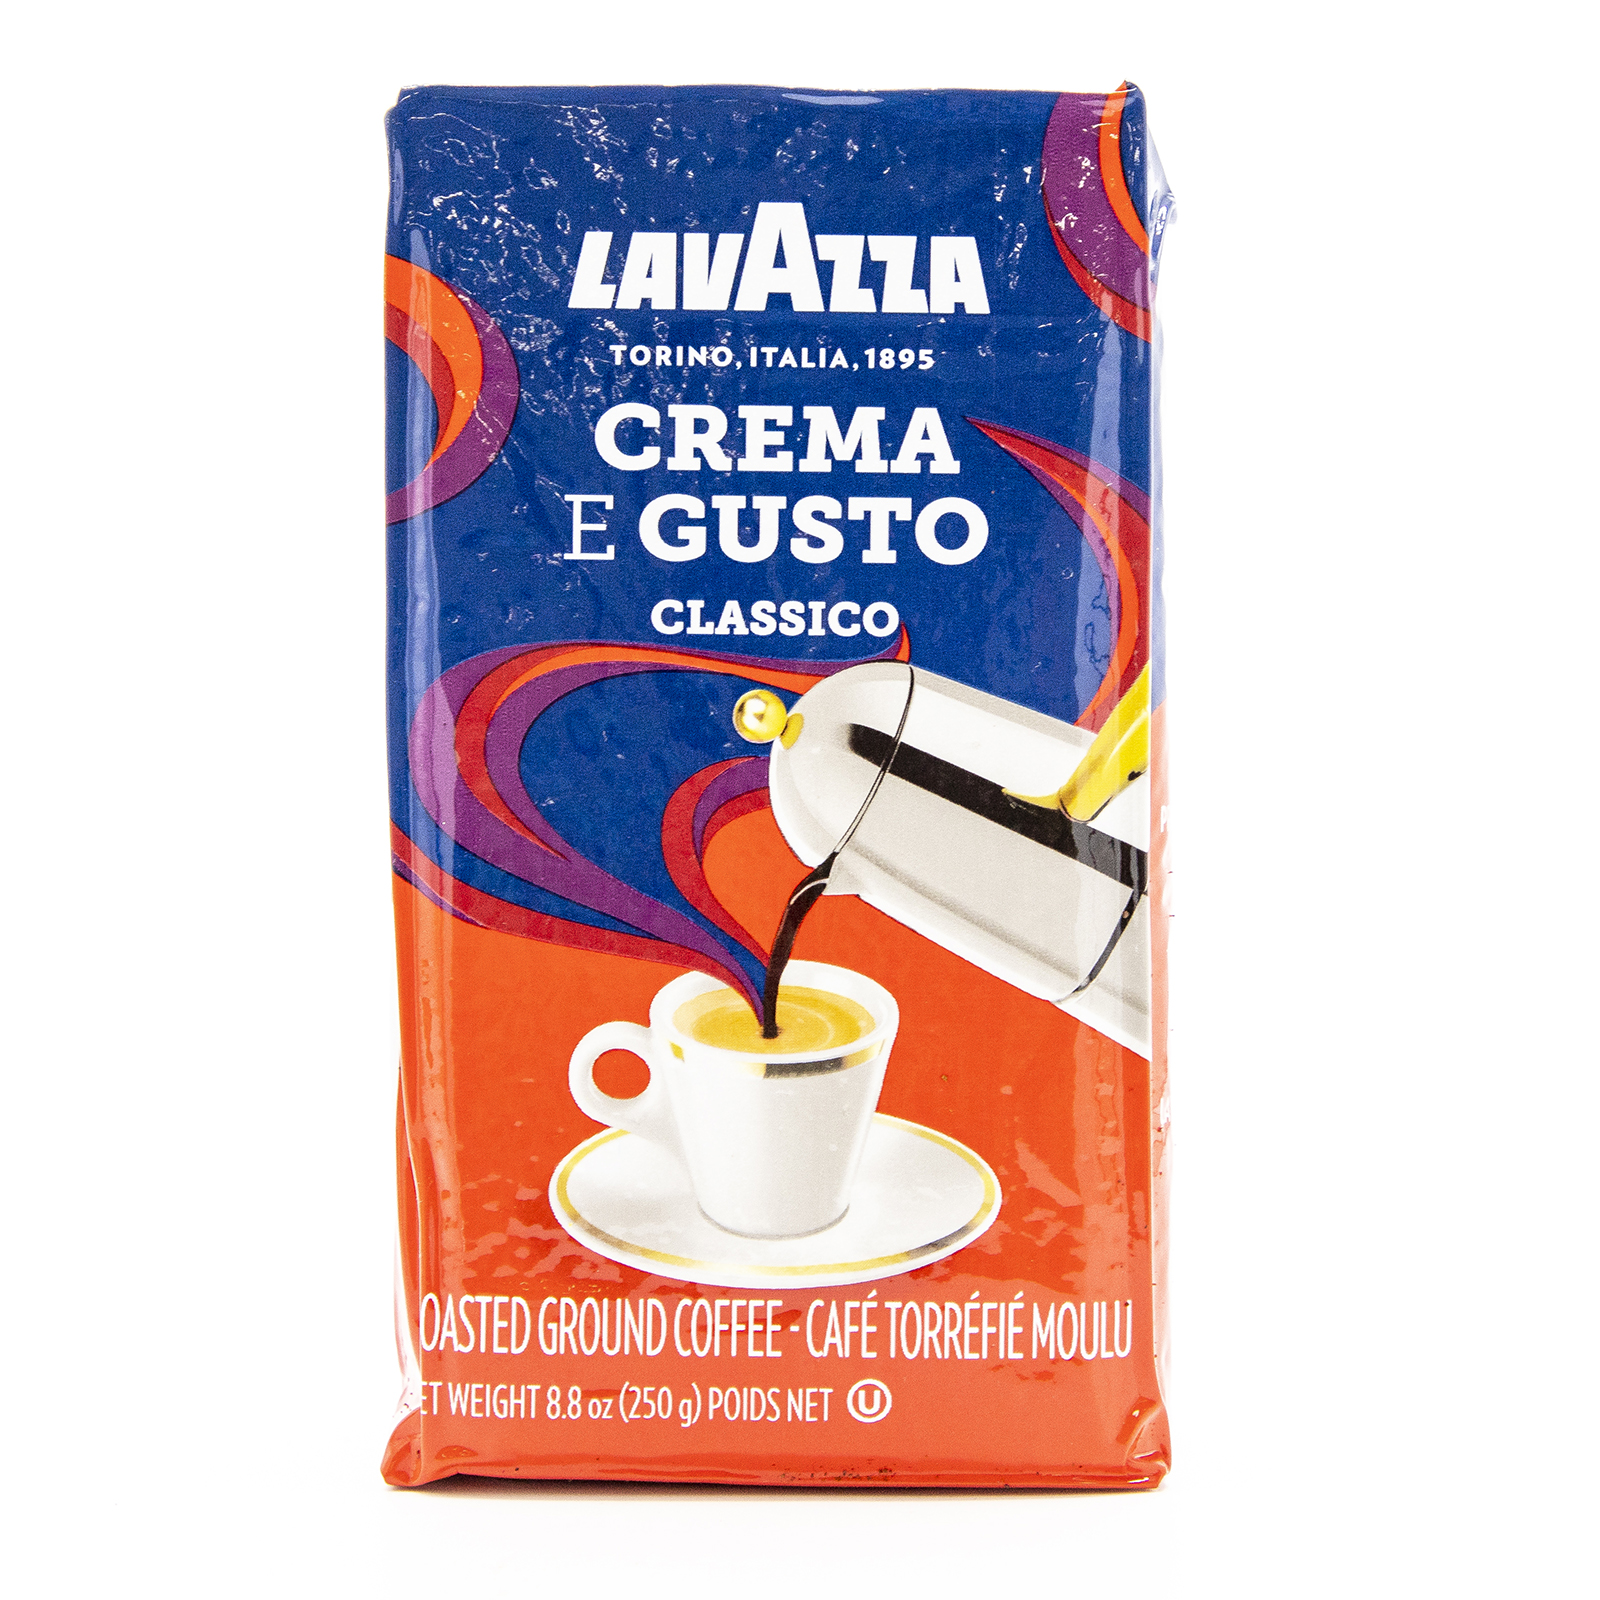 Crema e Gusto Classico Roast Ground Coffee by Lavazza - 8.8 oz Coffee